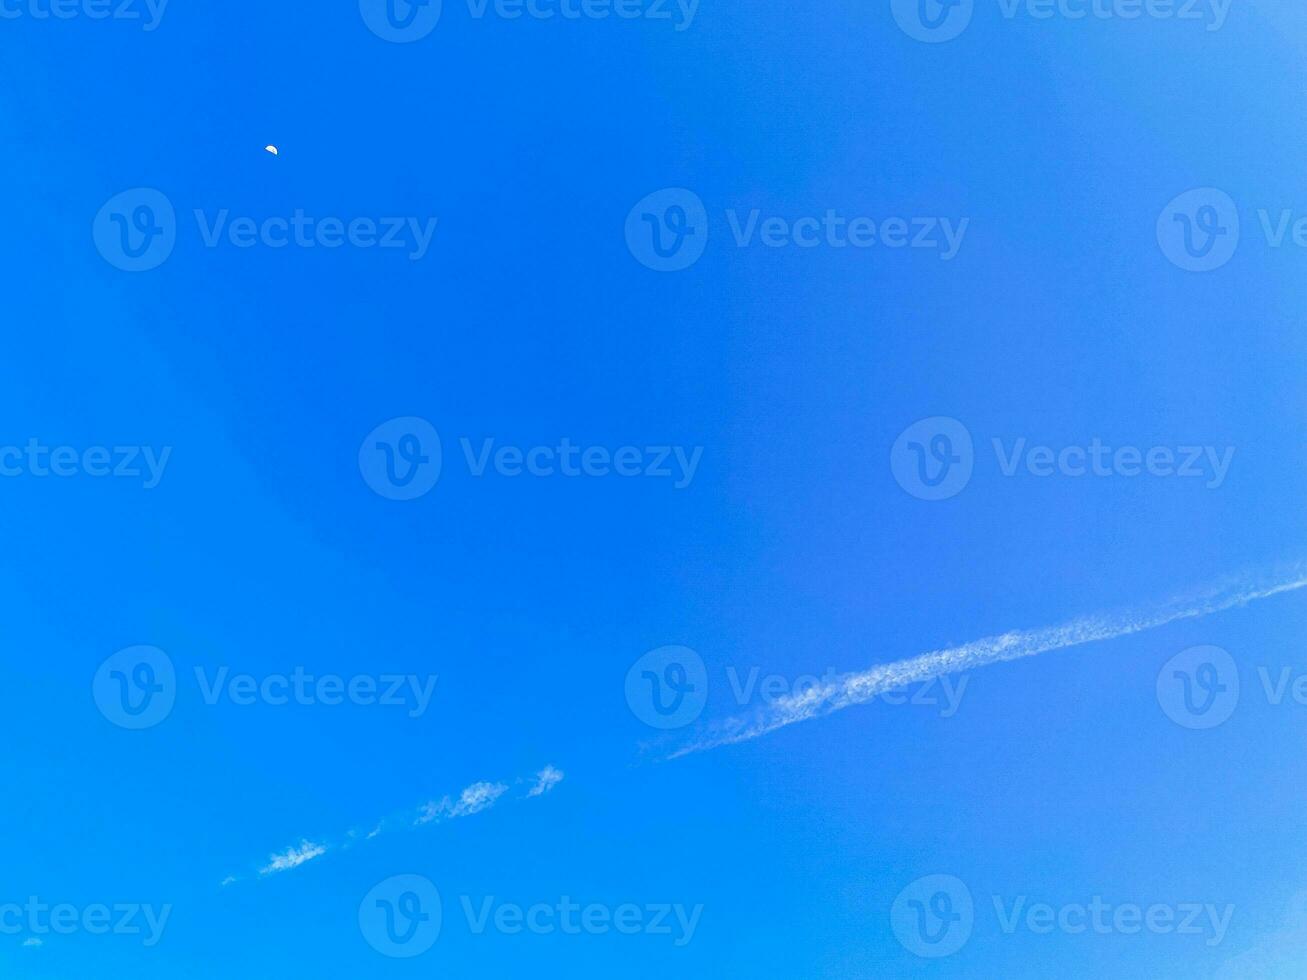 ciel bleu avec chemtrails chimiques cumulus nuages ciel d'ondes scalaires. photo